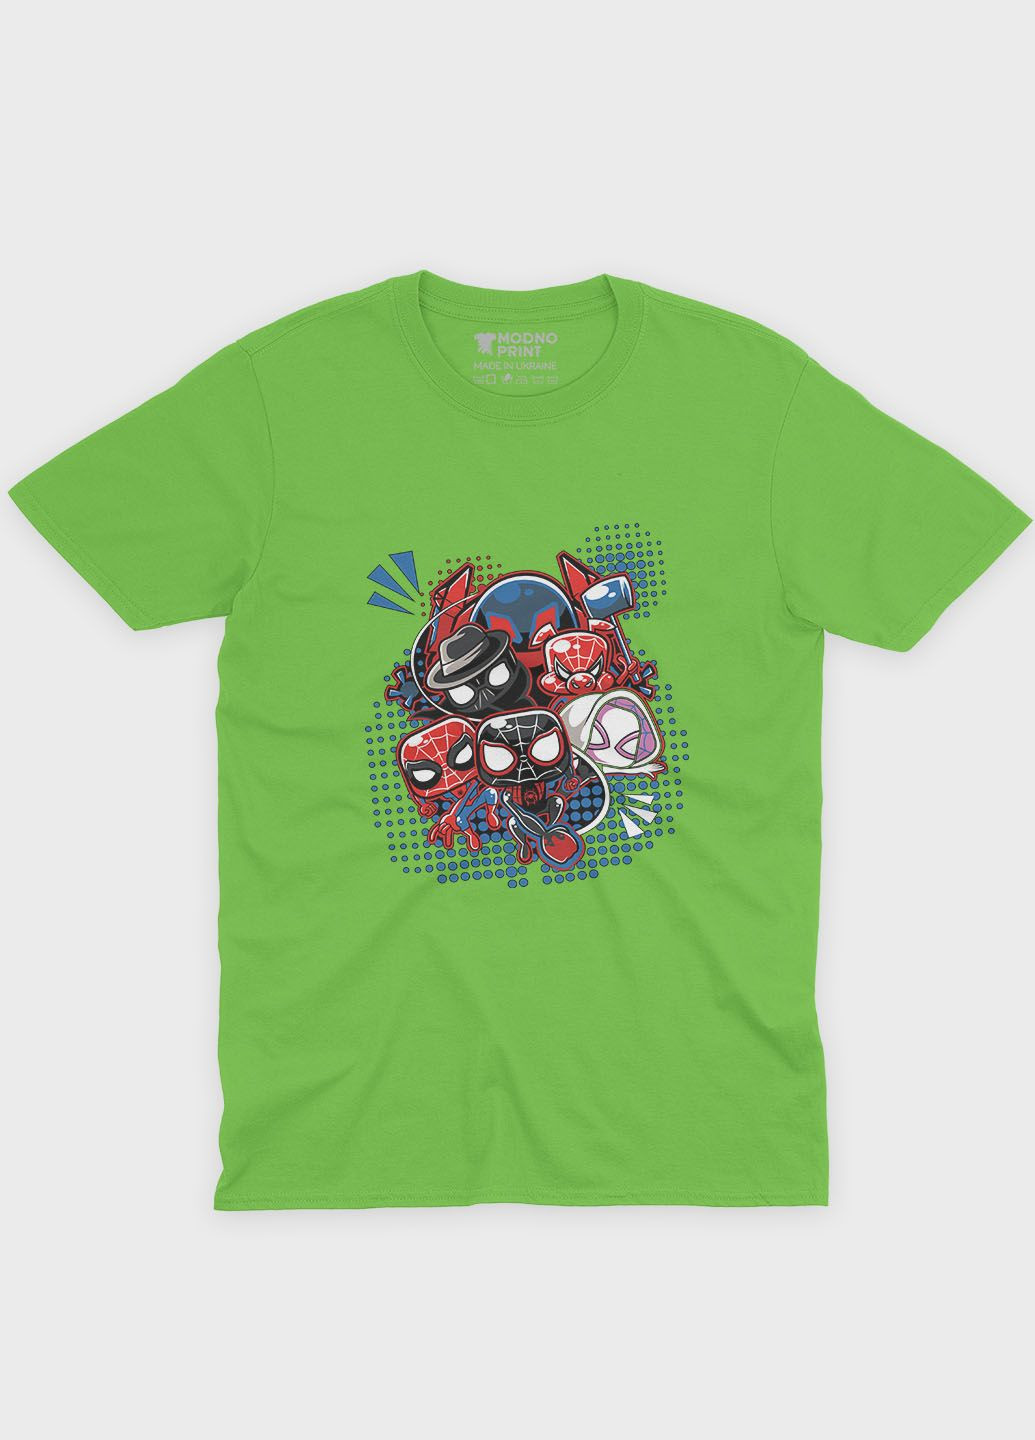 Салатовая демисезонная футболка для мальчика с принтом супергероя - человек-паук (ts001-1-kiw-006-014-023-b) Modno